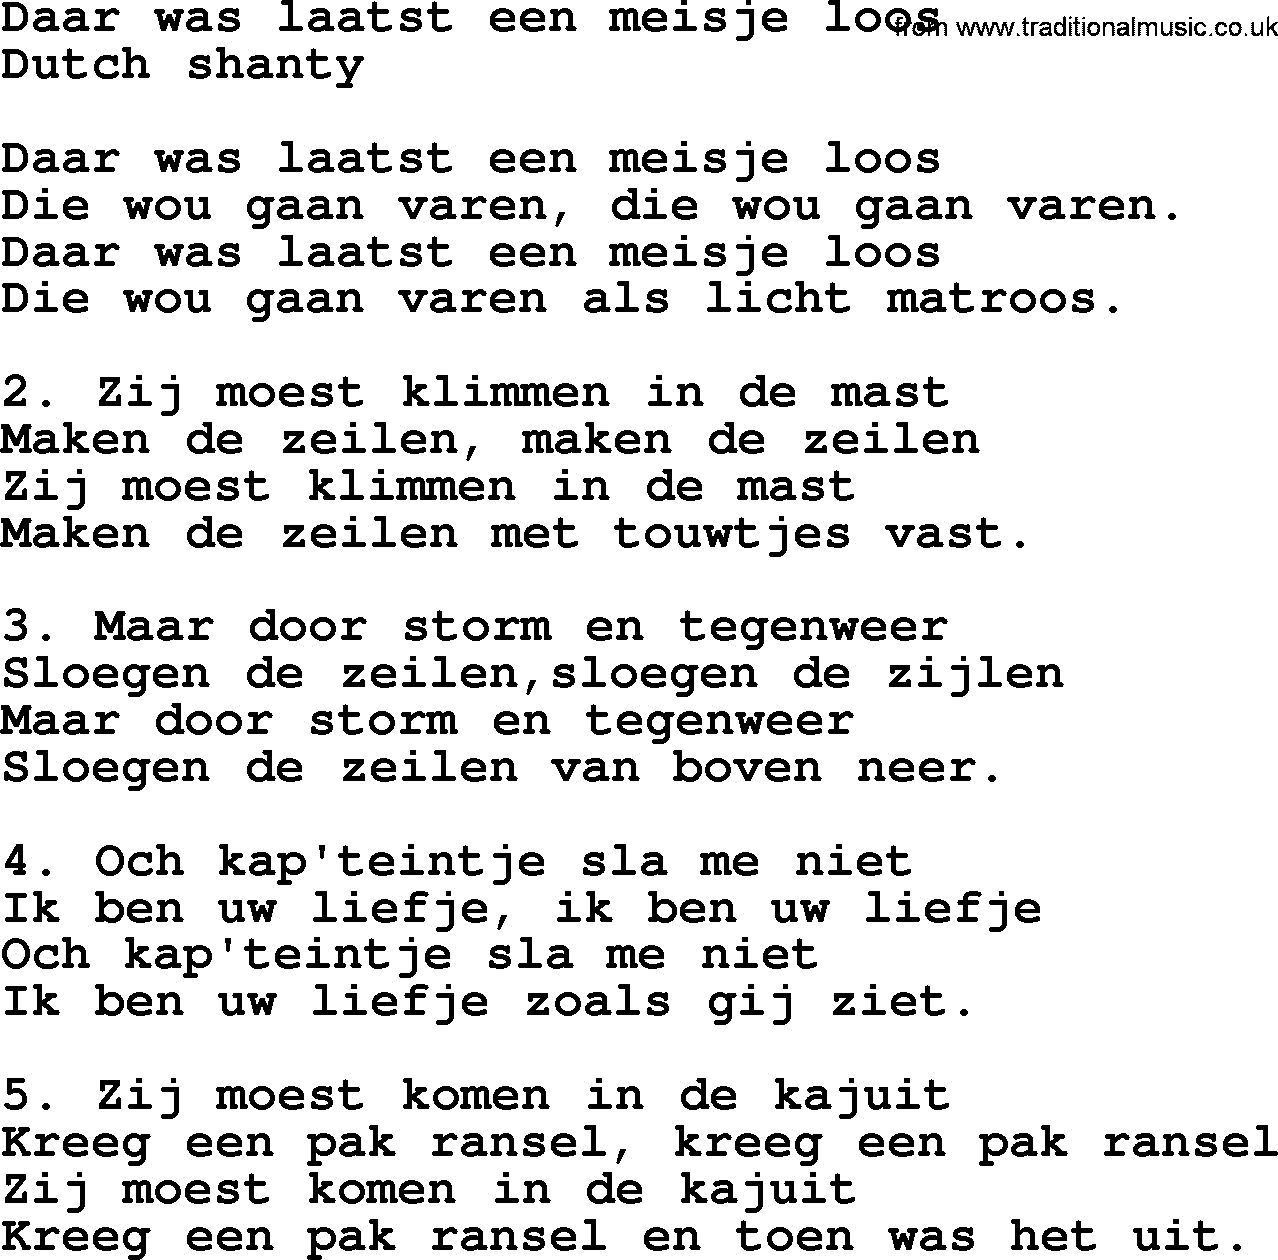 Sea Song or Shantie: Daar Was Laatst Een Meisje Loos, lyrics